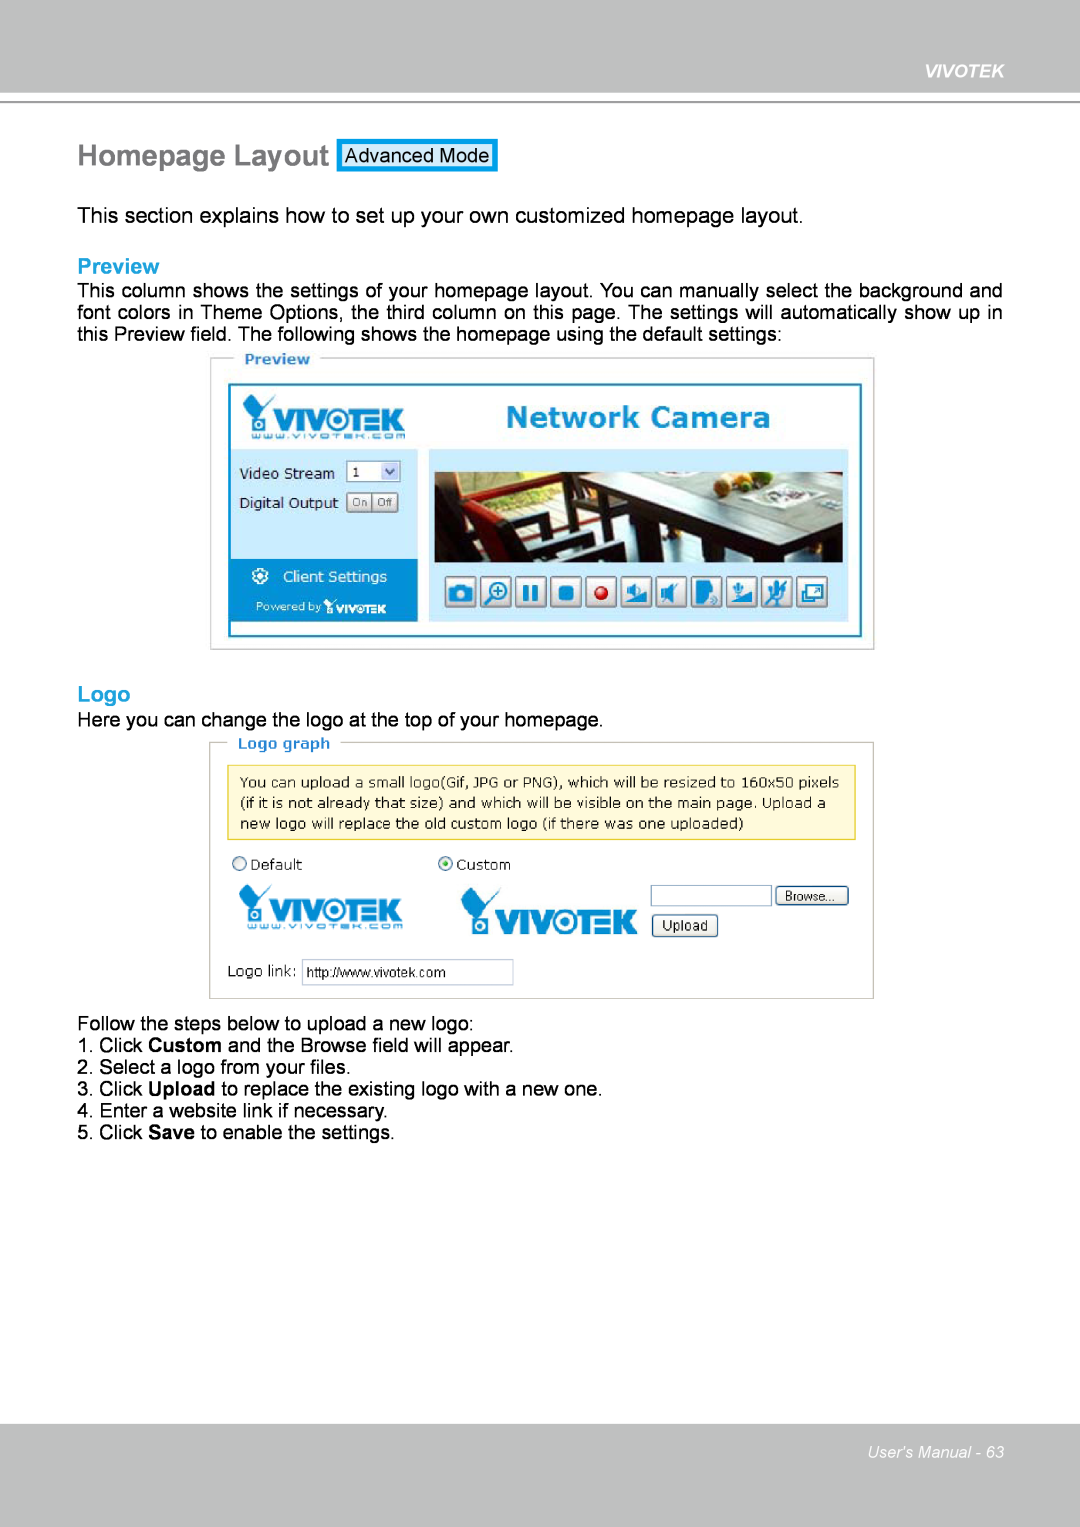 Vivotek PZ7132 manual Homepage Layout, Preview, Logo 